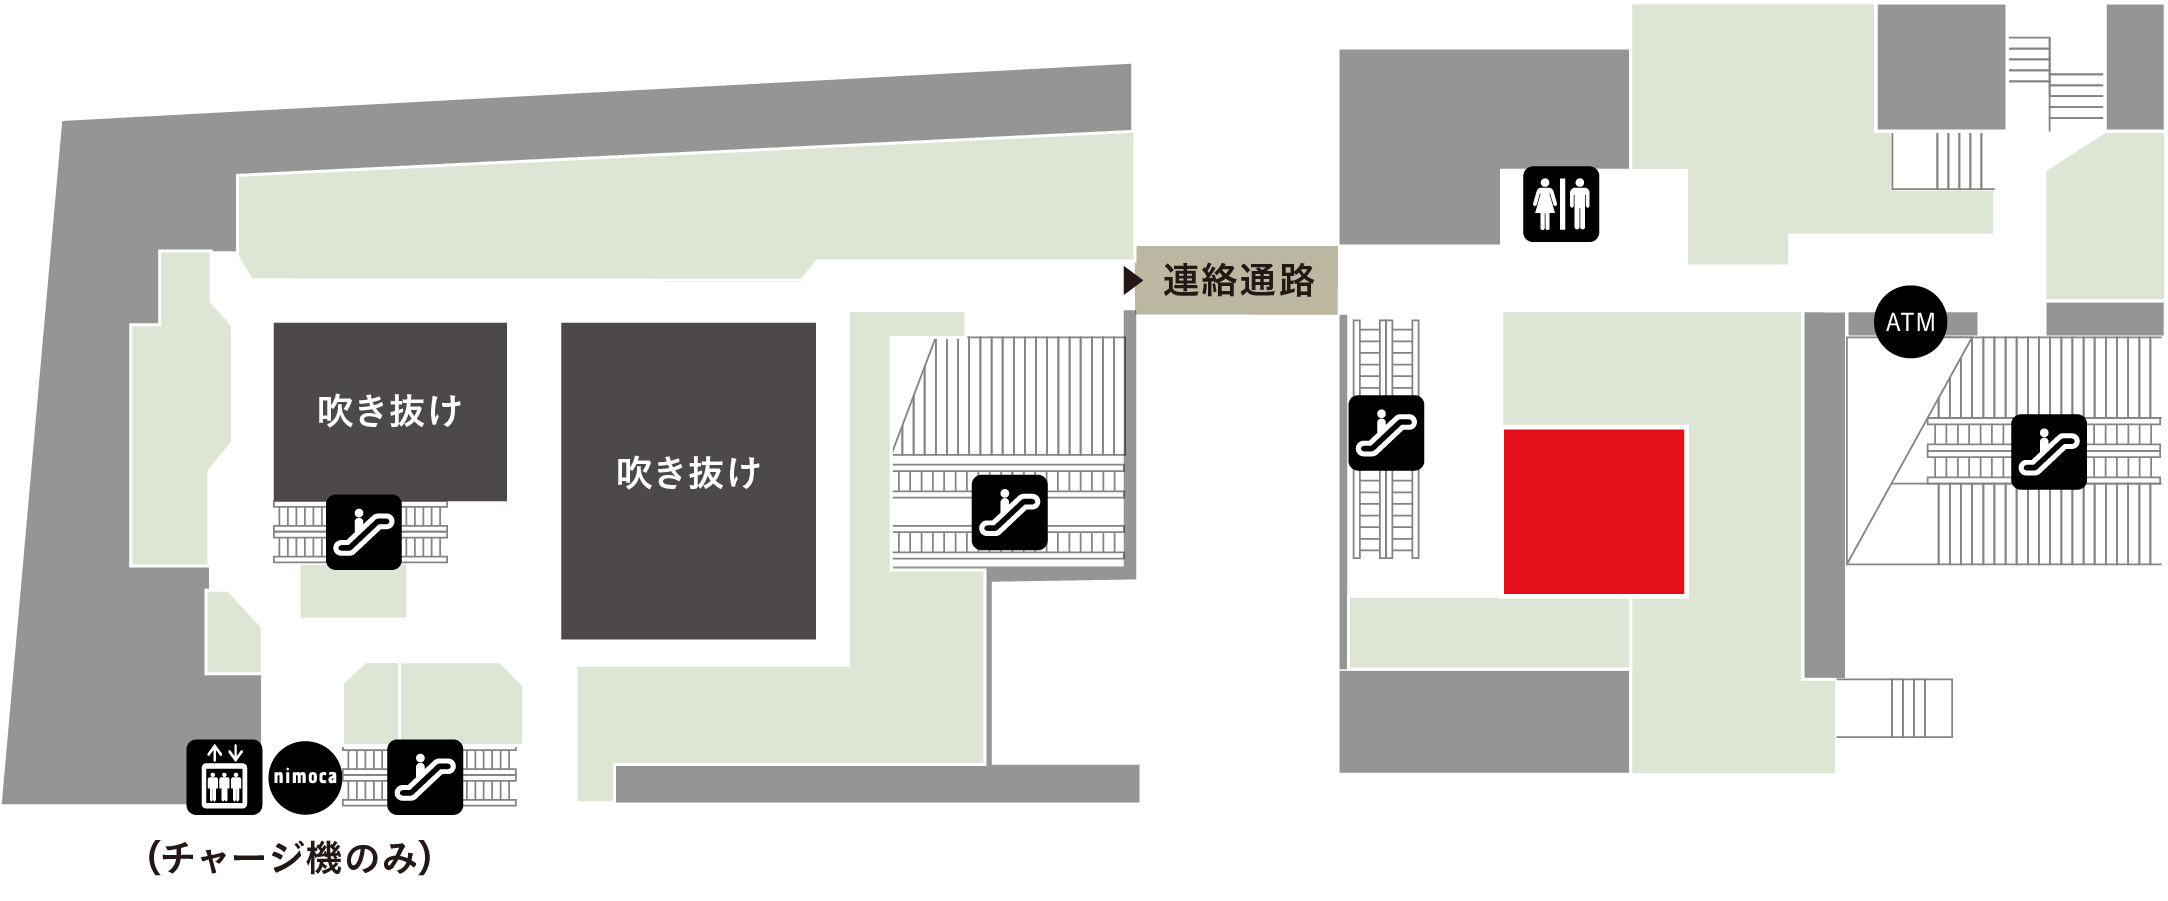 岩田時計店フロアマップ